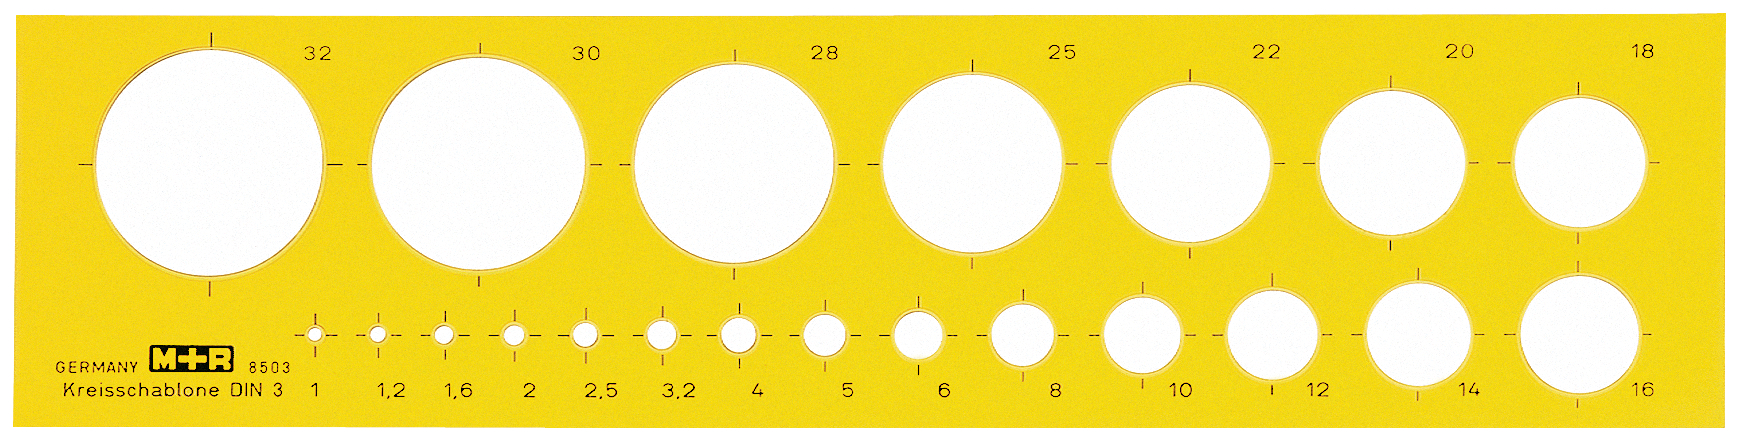 M+R Calibre circulaire 1-32mm 85030670 jaune-transparent